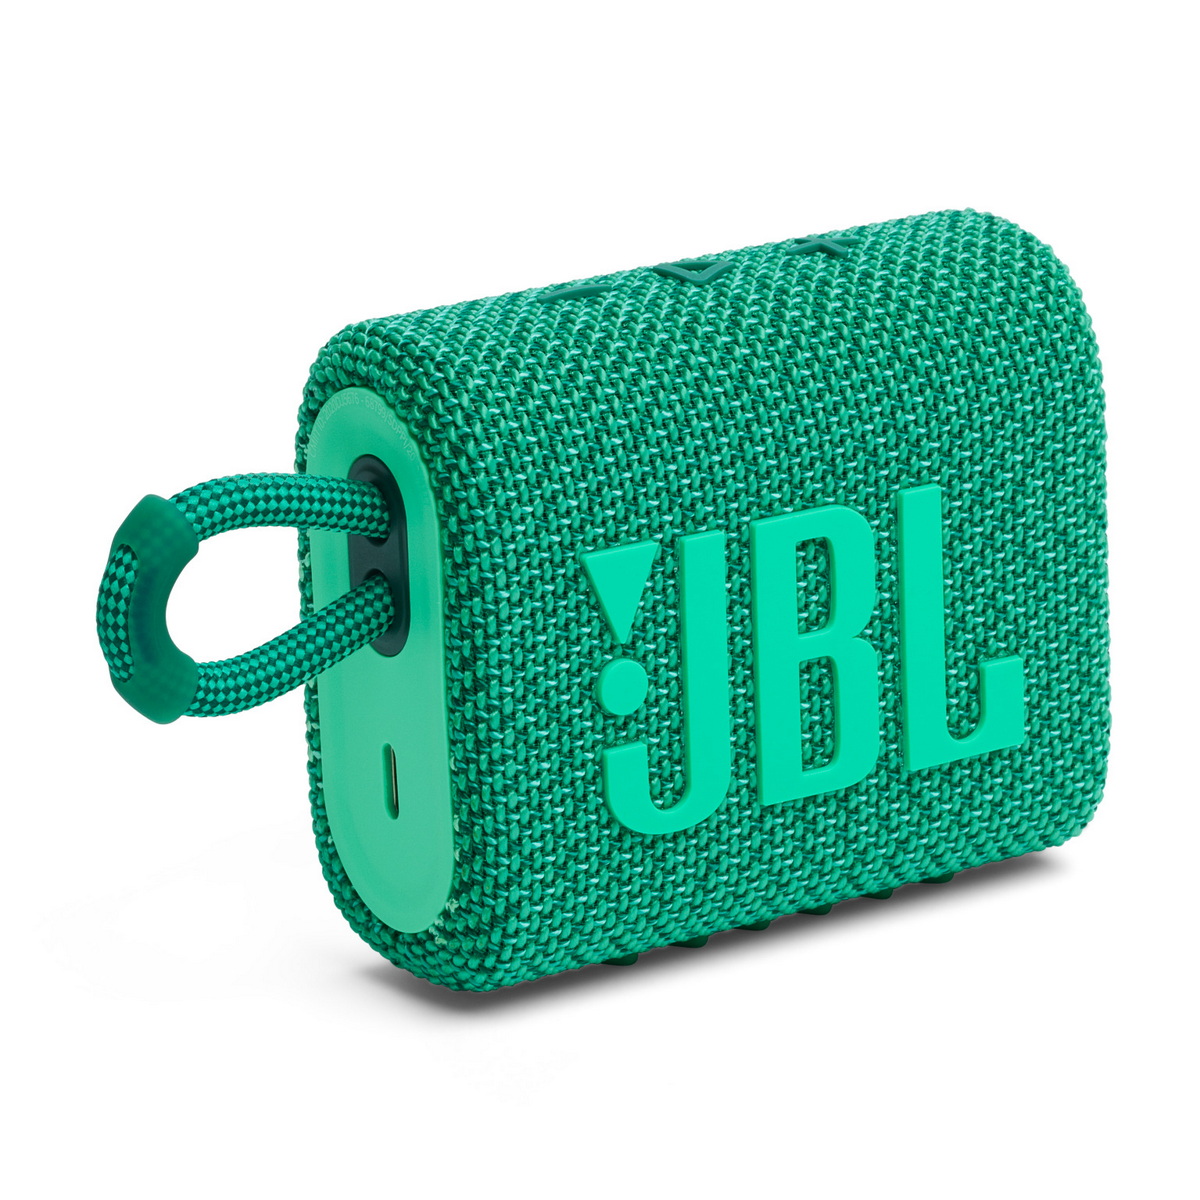 Produkty JBL jako prezenty od zajączka